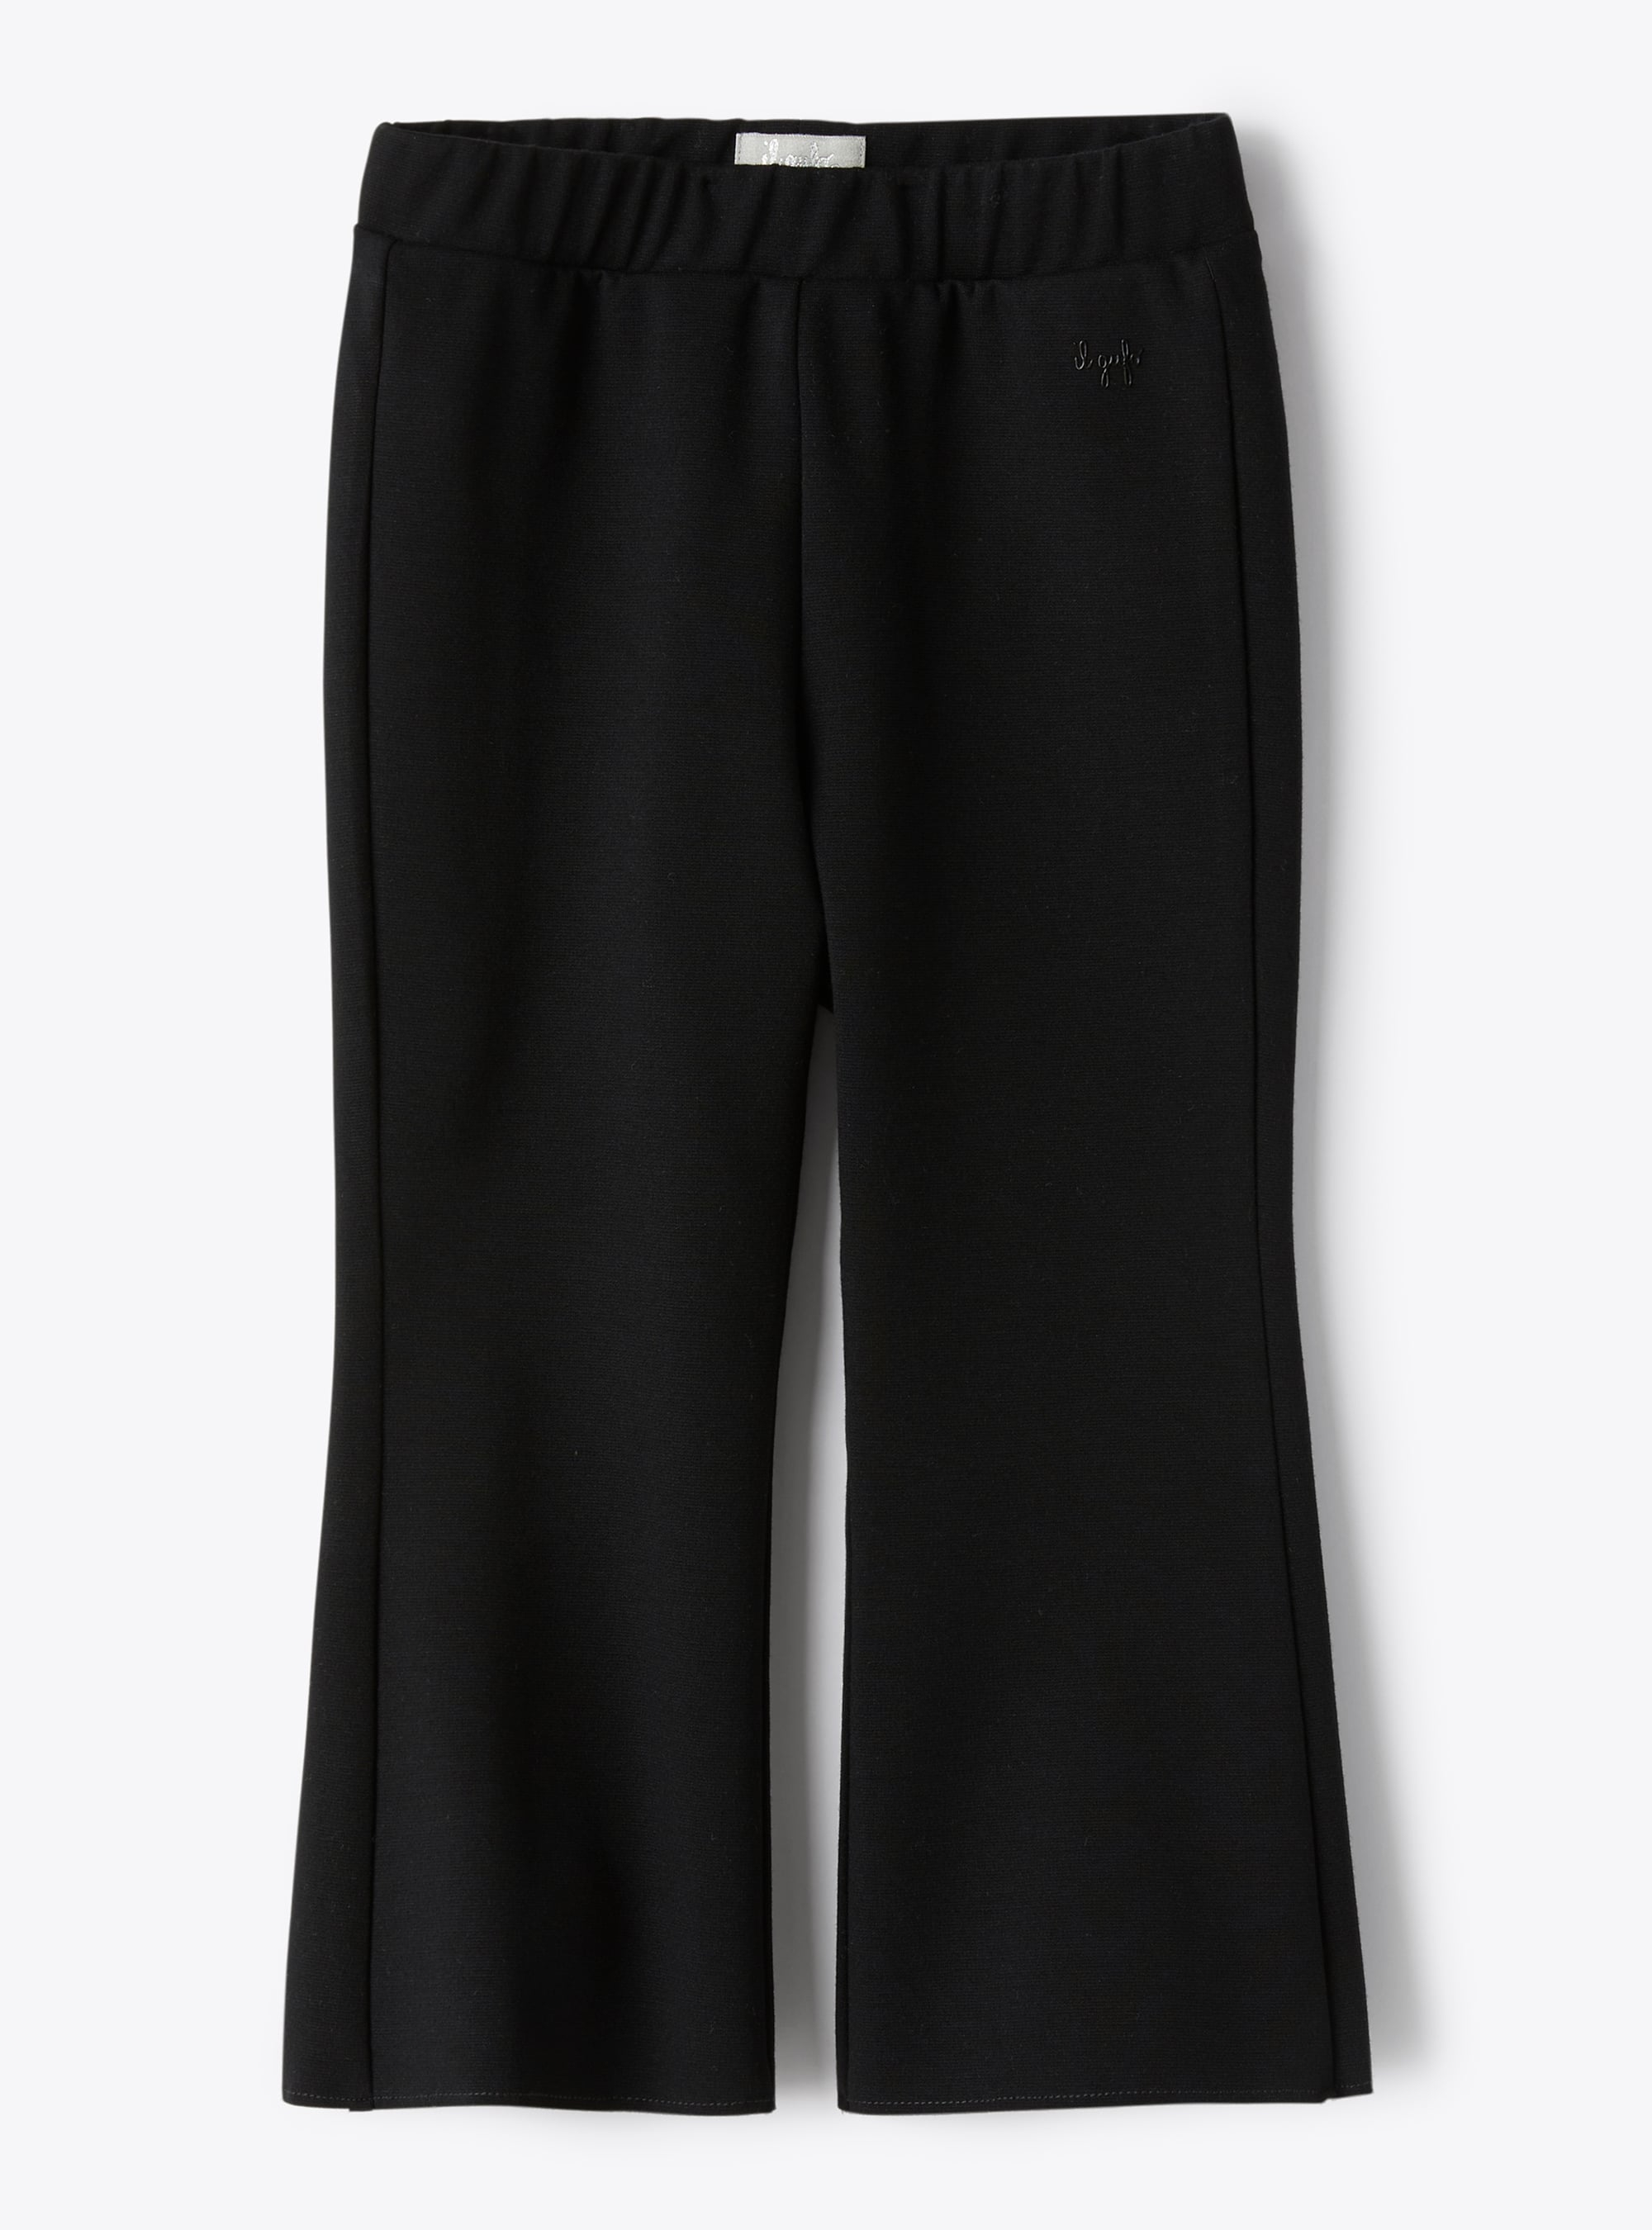 Trousers in black Milano-stitch fabric - Trousers - Il Gufo